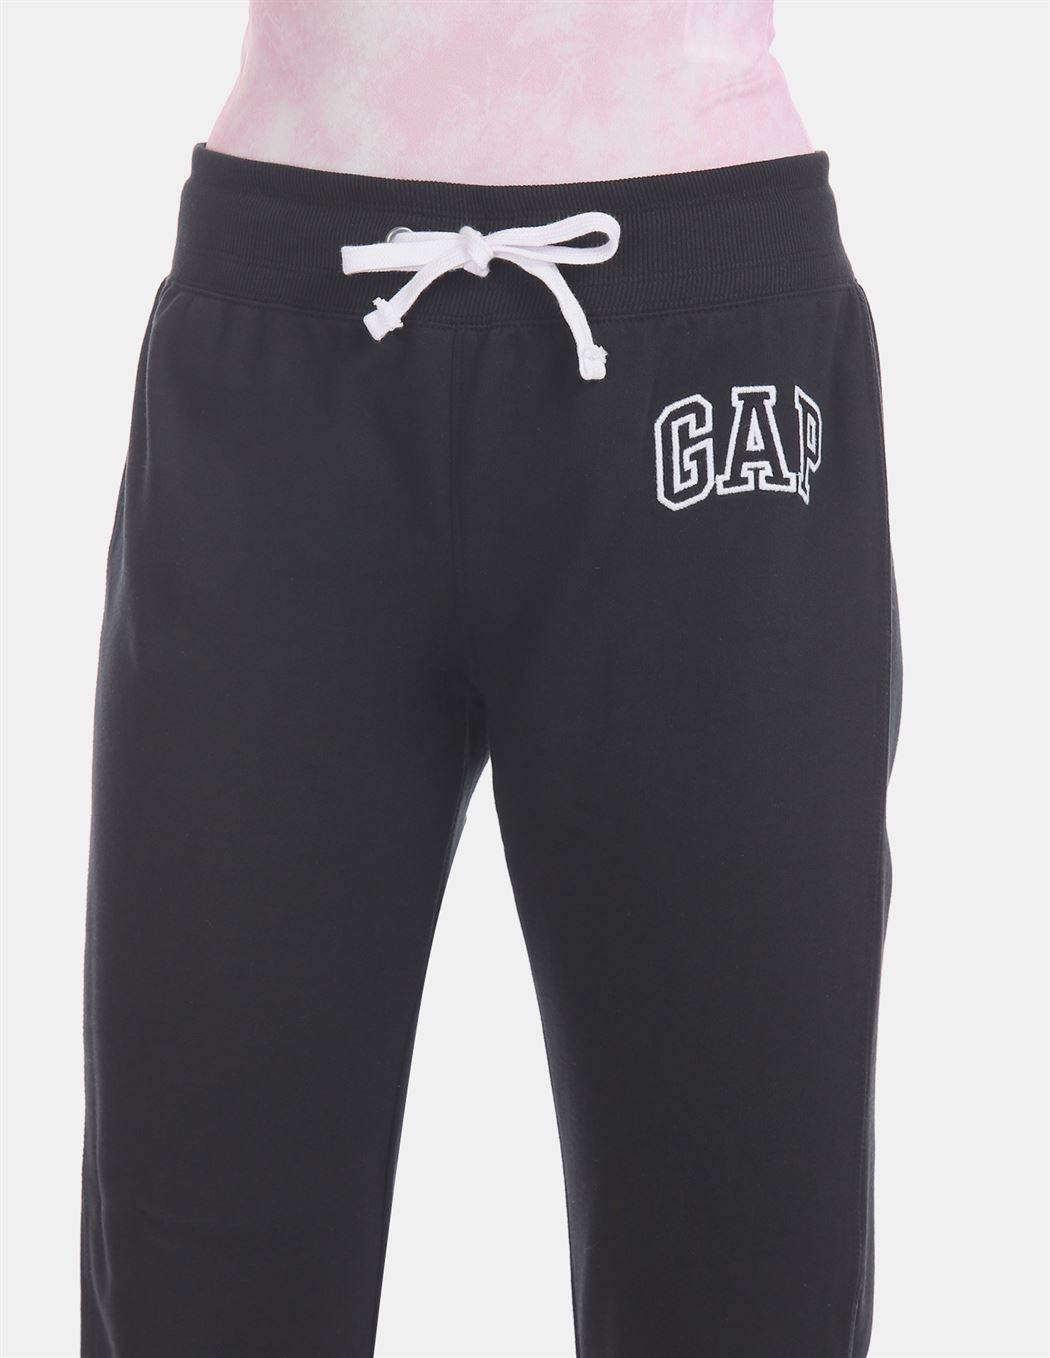 Gap Women's Casual Wear Joggers